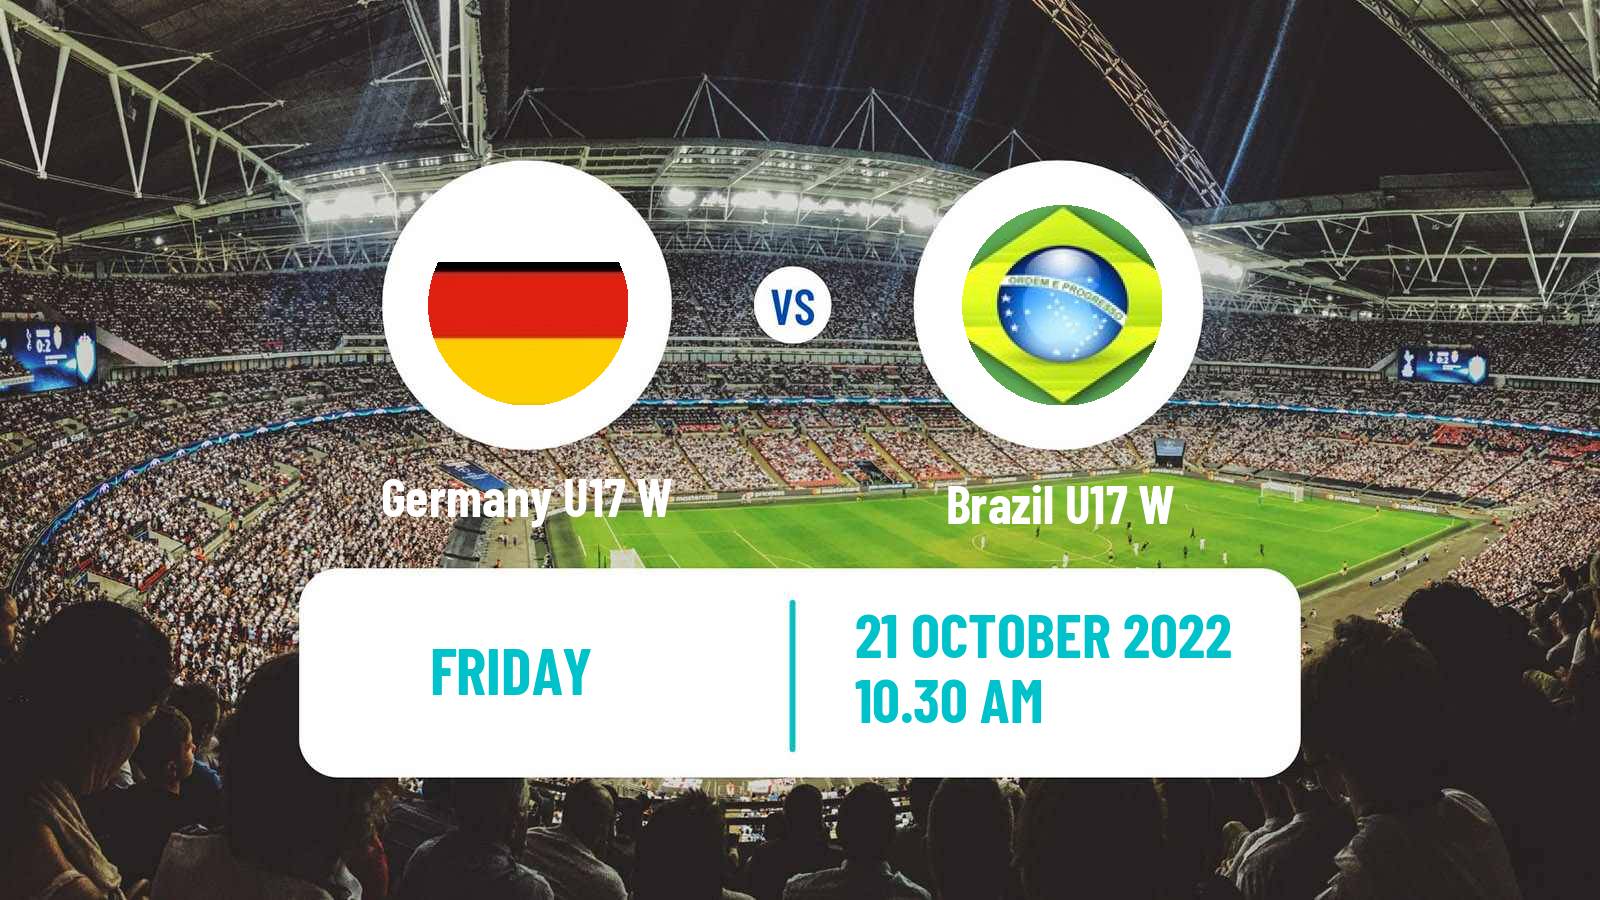 Soccer World Cup Women U17 Germany U17 W - Brazil U17 W